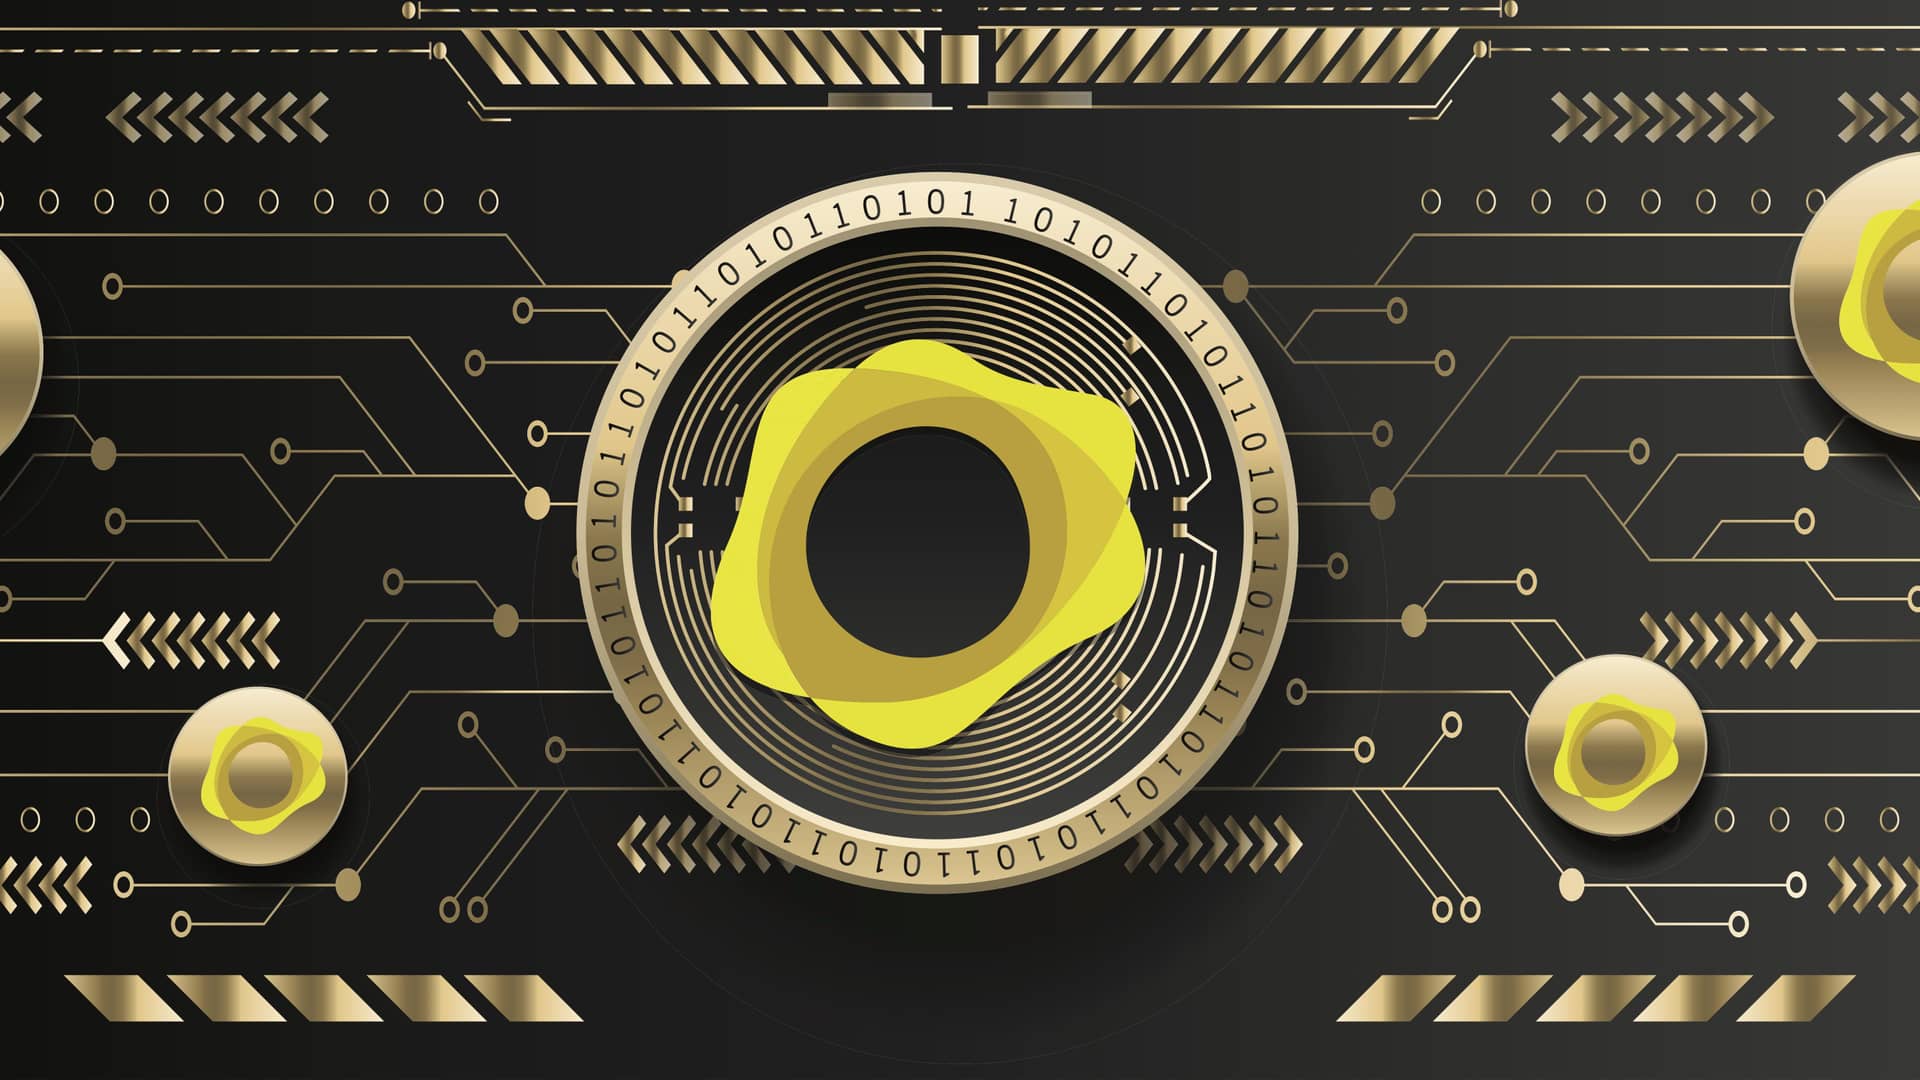 logo de las criptomonedas pax gold sobre un fondo geomtrico